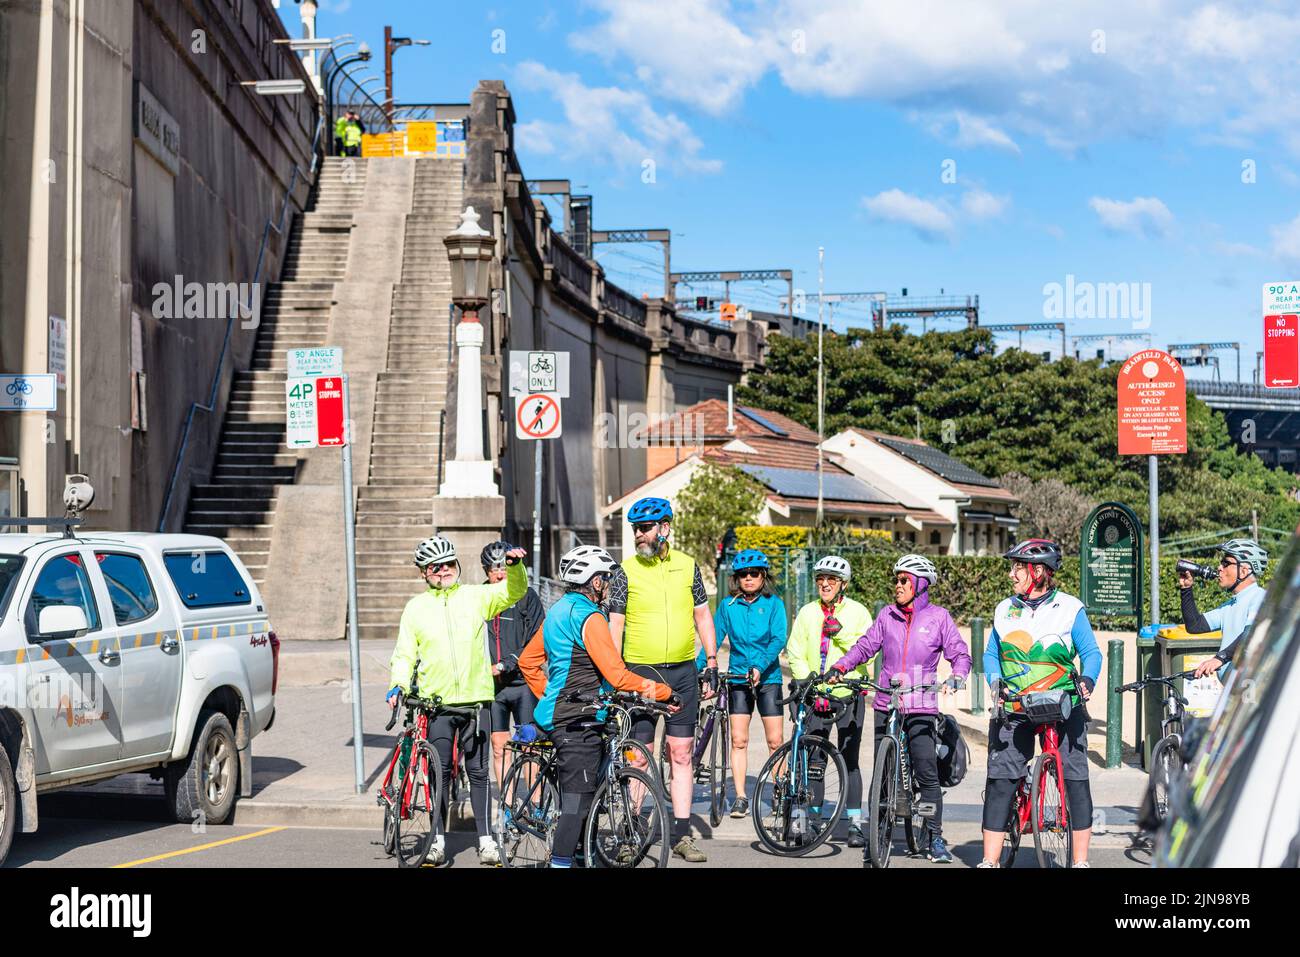 Prevista para su sustitución después de una competición internacional de diseño, la rampa para bicicletas del norte desde el puente del puerto de Sídney puede suponer un reto Foto de stock